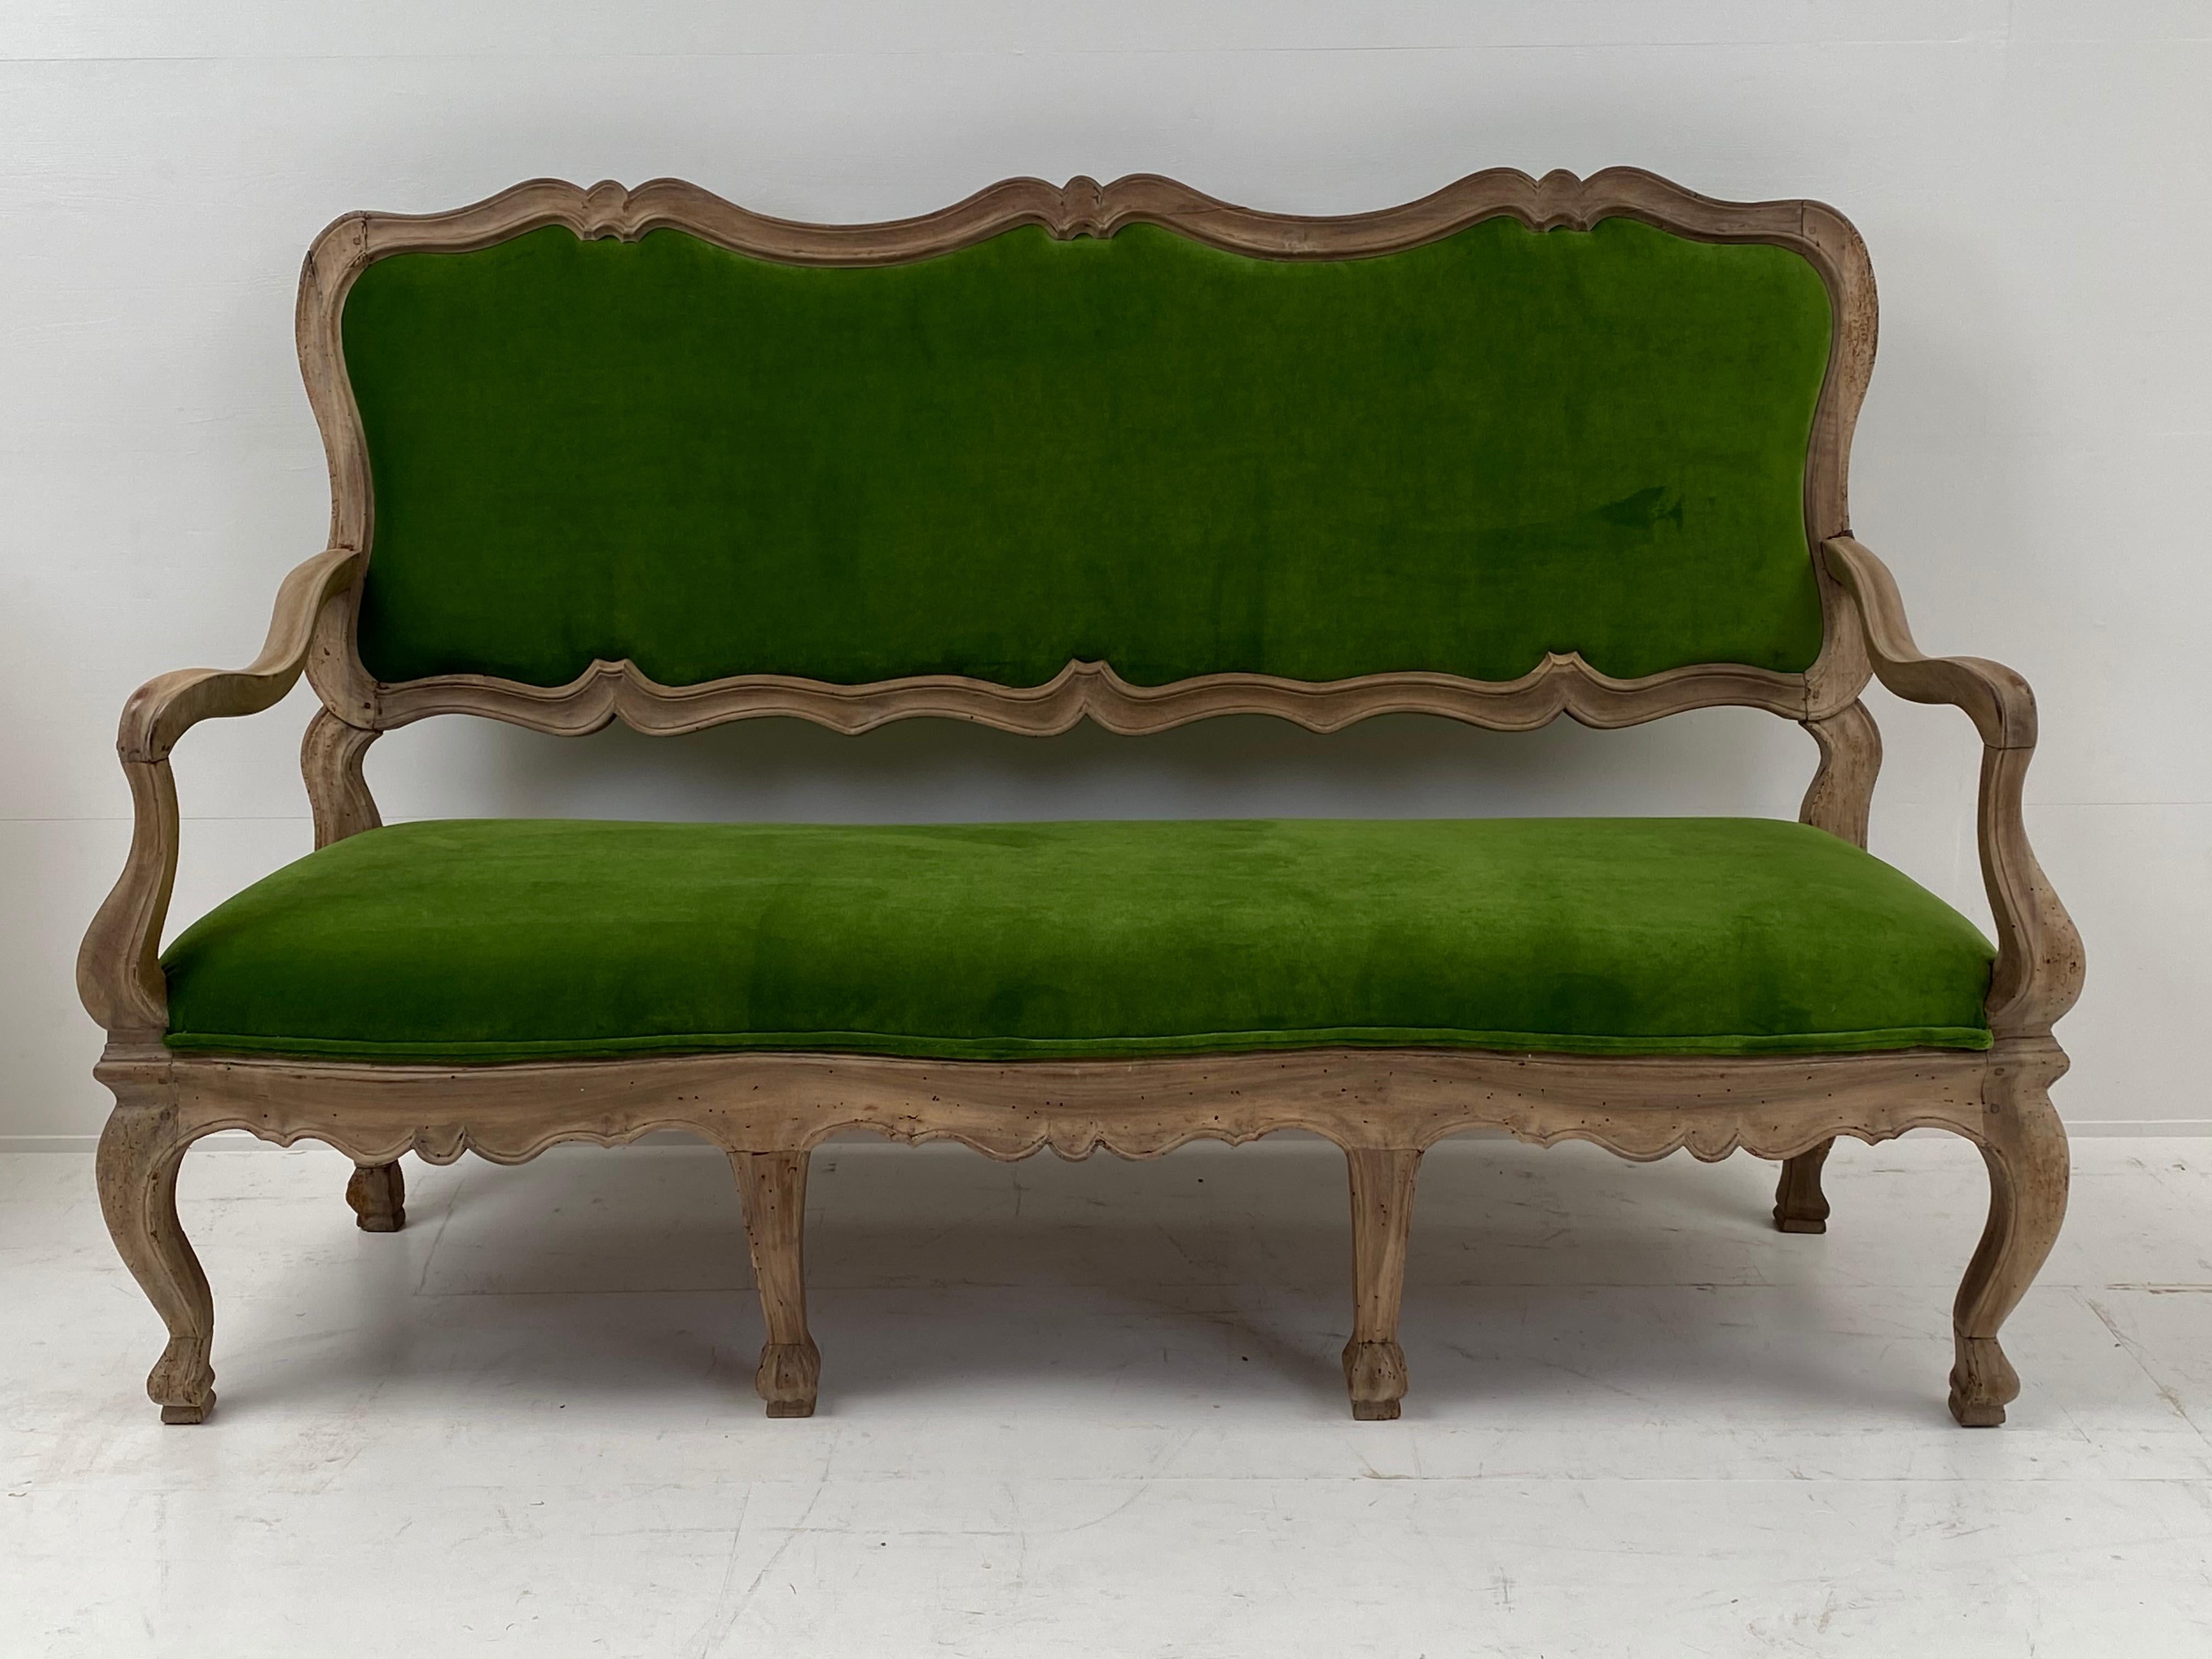 Schöne italienische Sofa, drei Sitze in einem gebleichten Nussbaum mit einer großen Patina,
neue Polsterung Italian Velvet von Decortex.